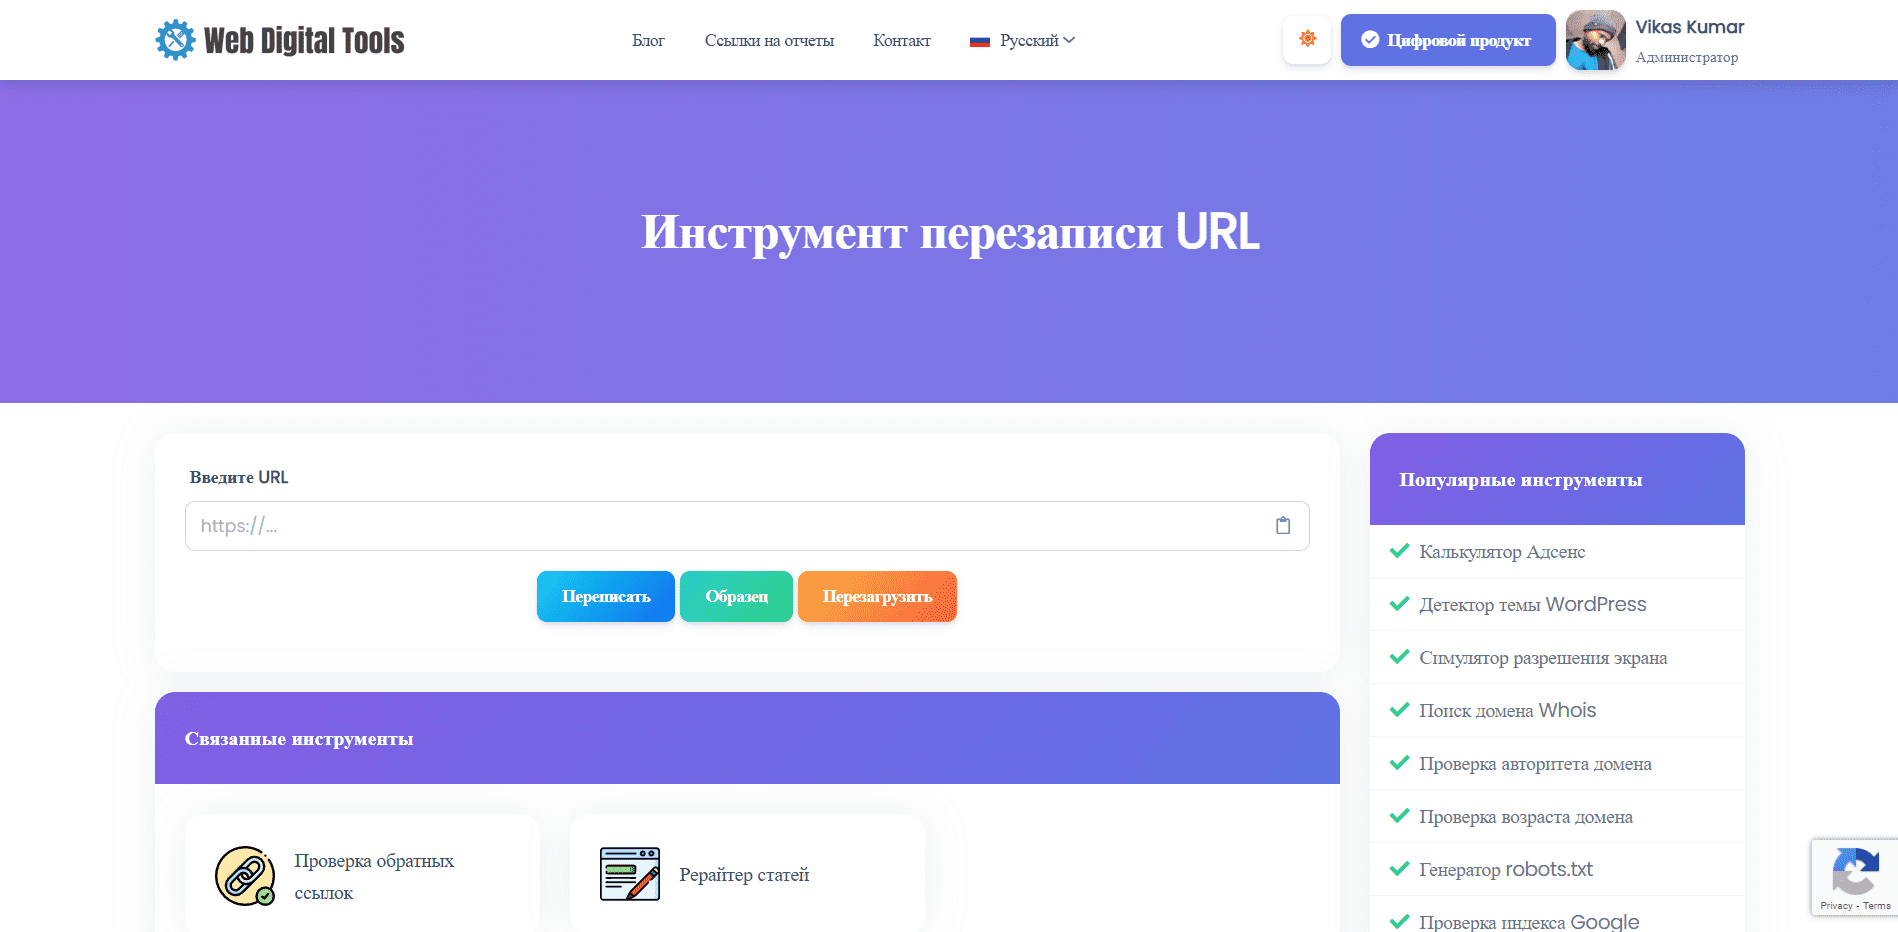 Инструмент перезаписи URL